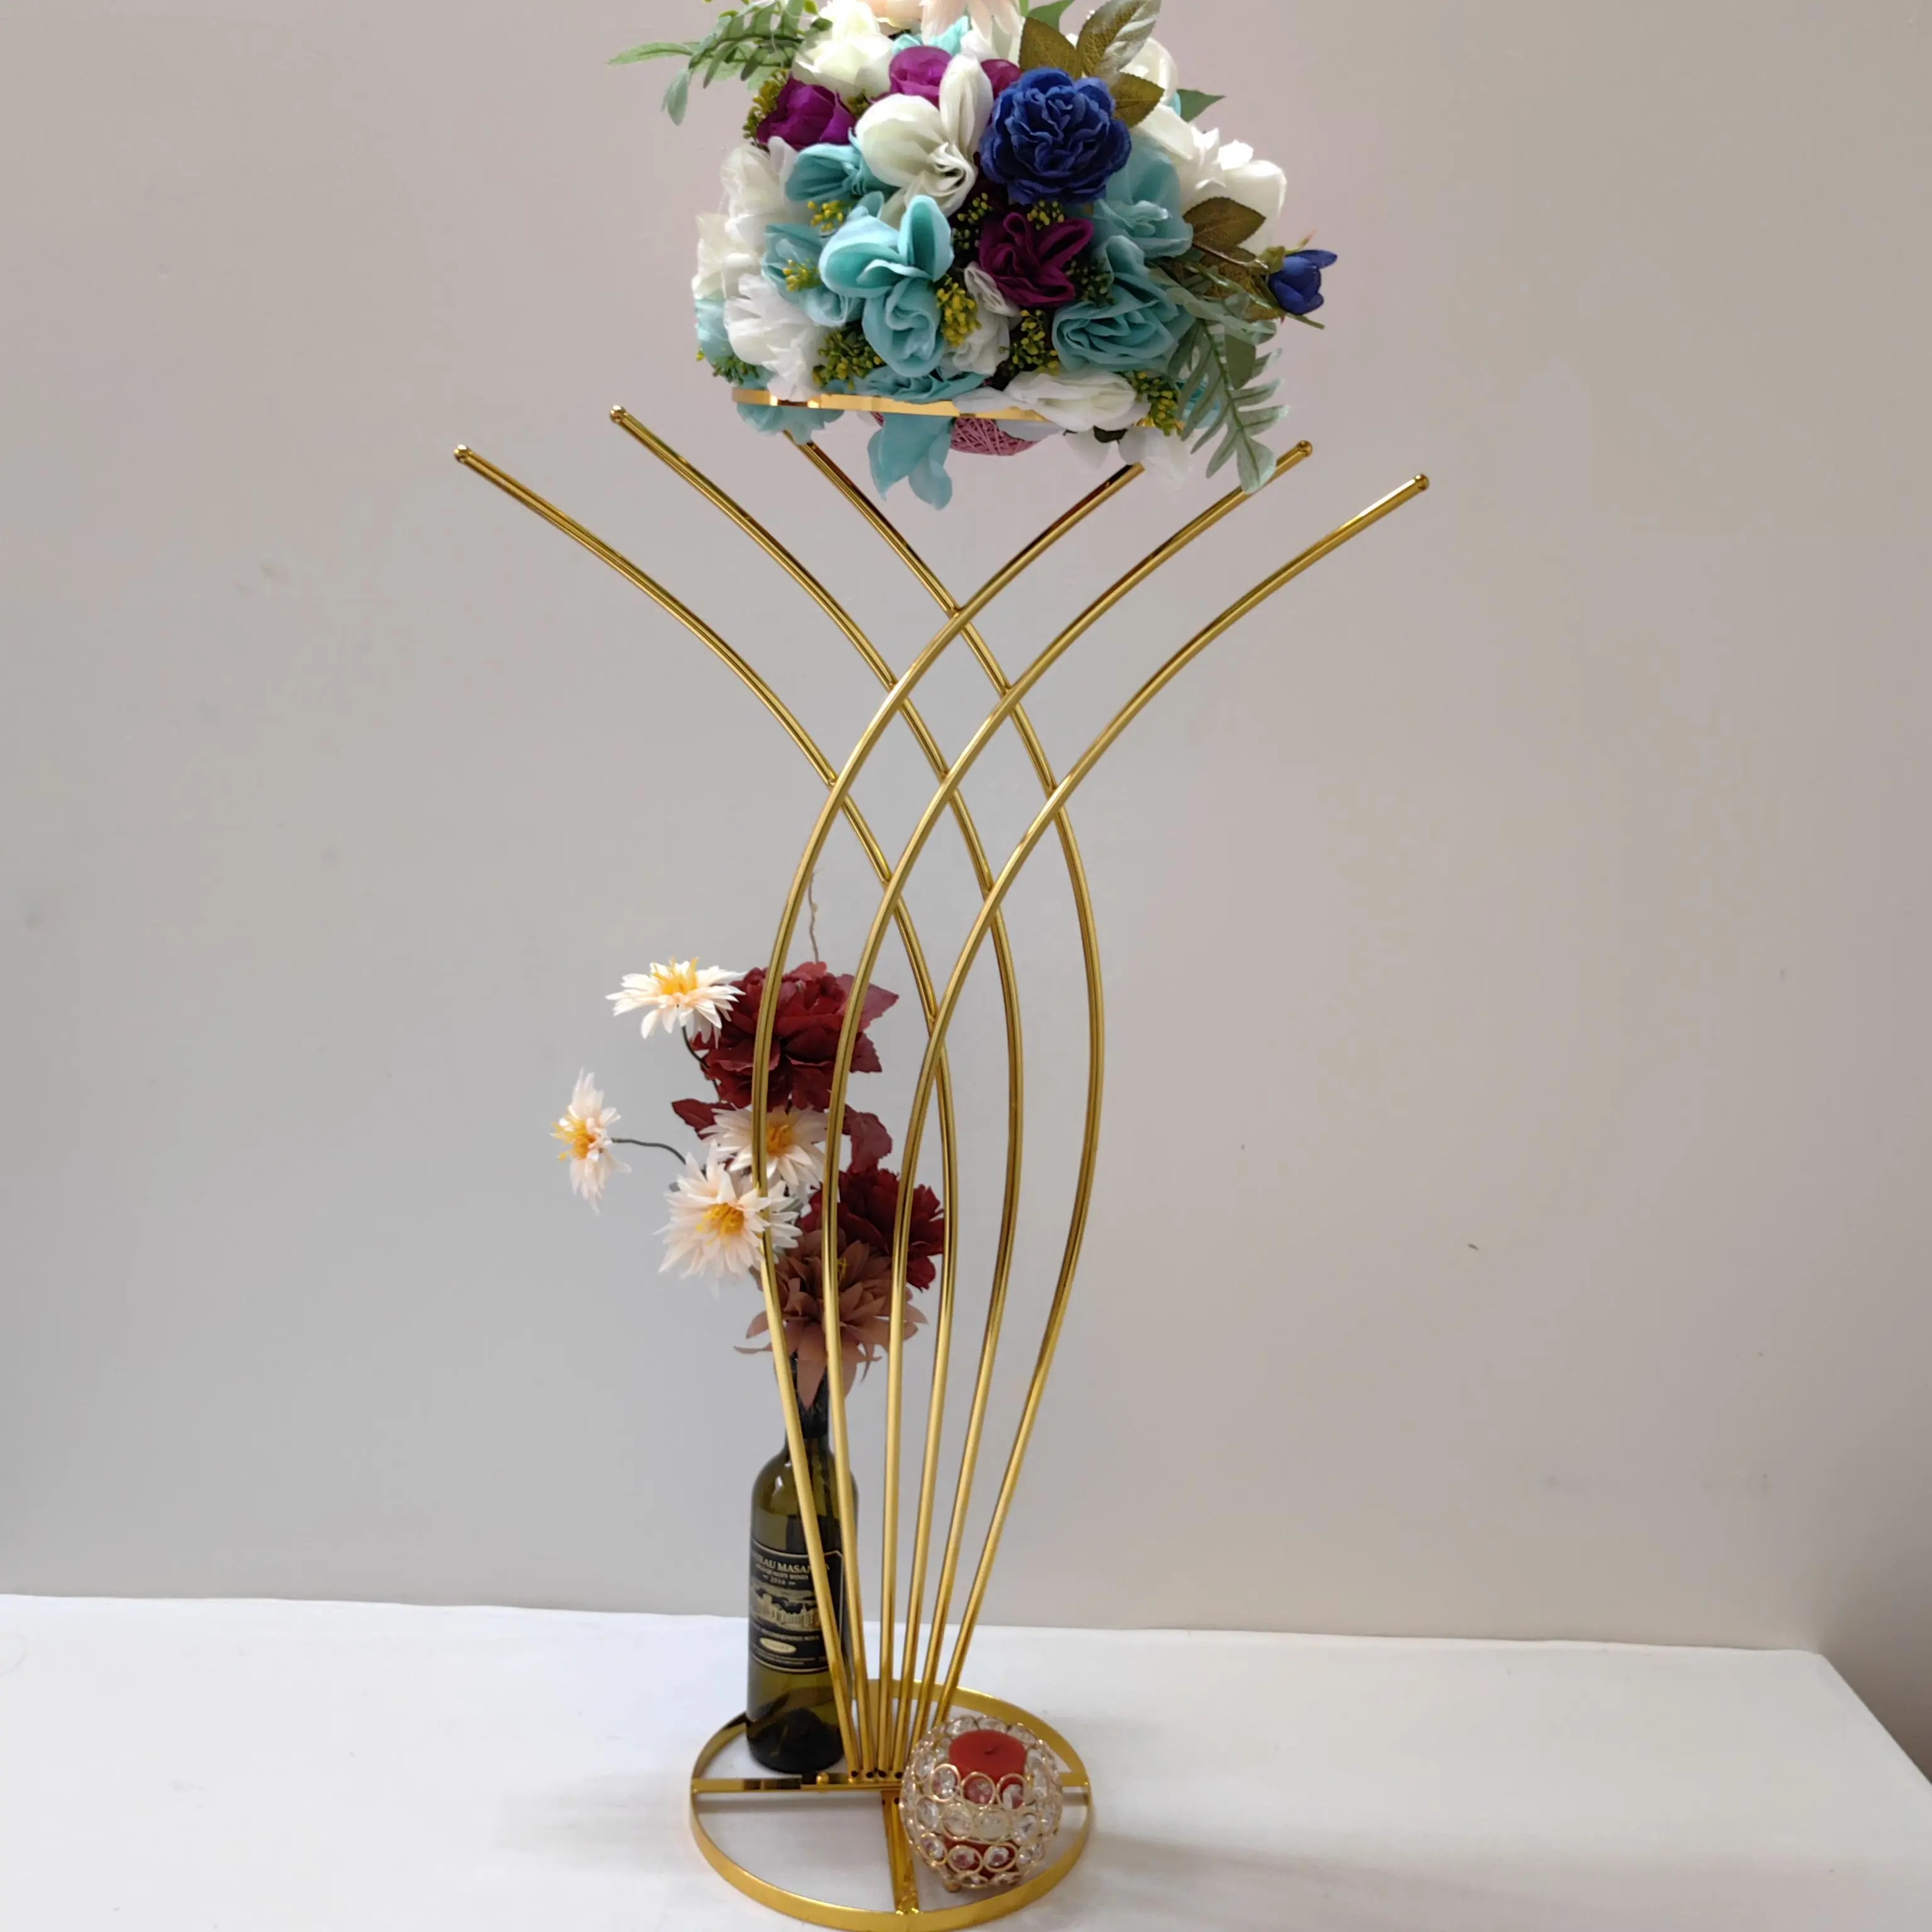 Ourwarm vasi decorazioni per tavoli, fiori geometrici a tromba, supporto per centrotavola per matrimoni, argento e oro